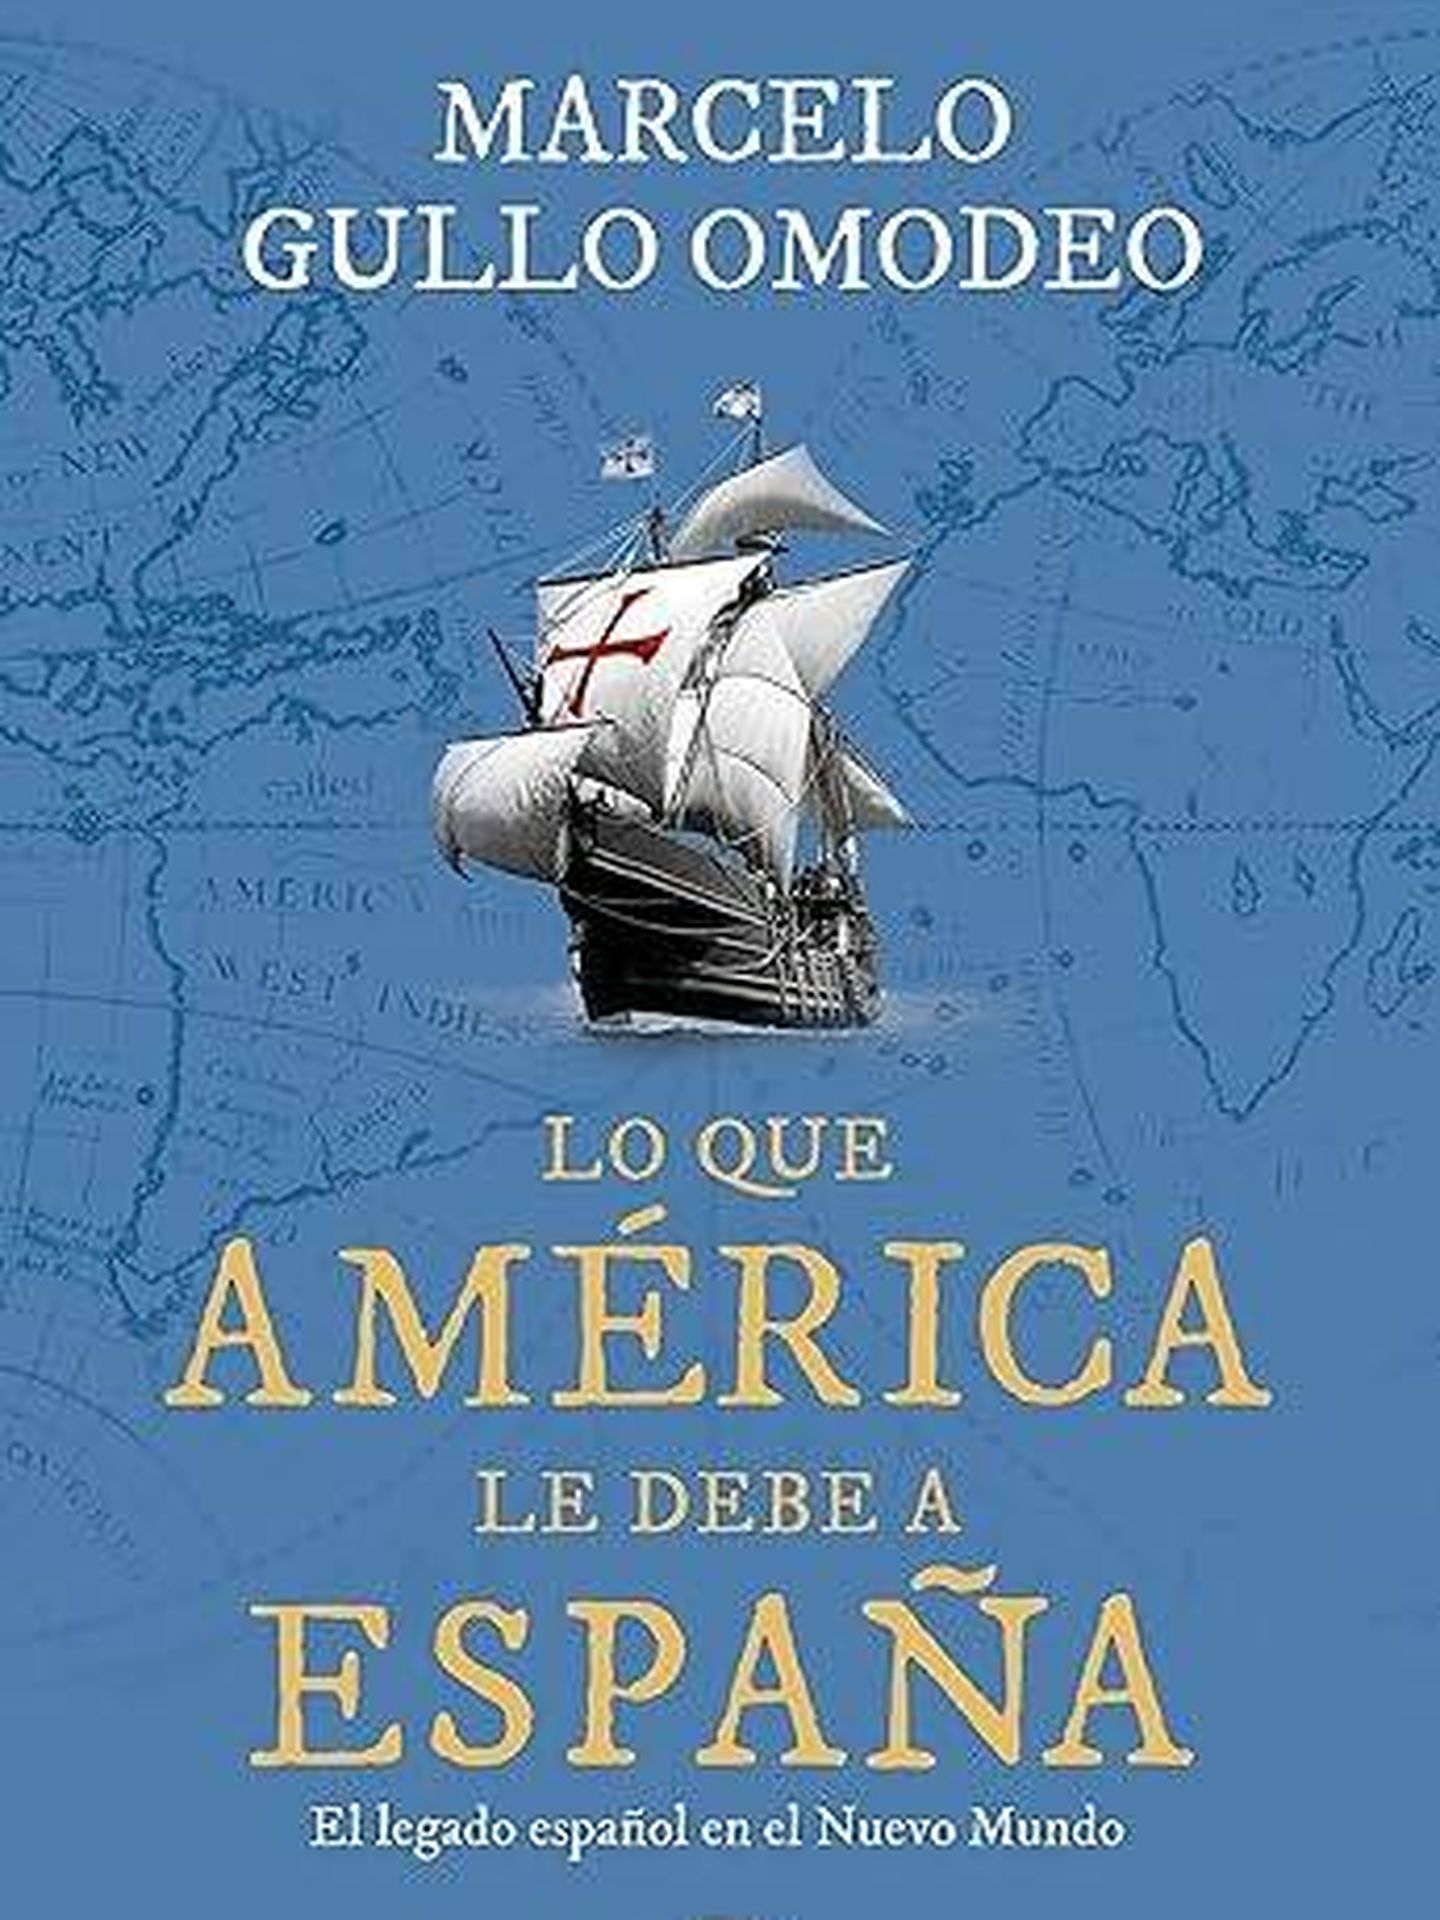 Portada de 'Lo que América le debe a España', el nuevo libro de Marcelo Gullo Omodeo.